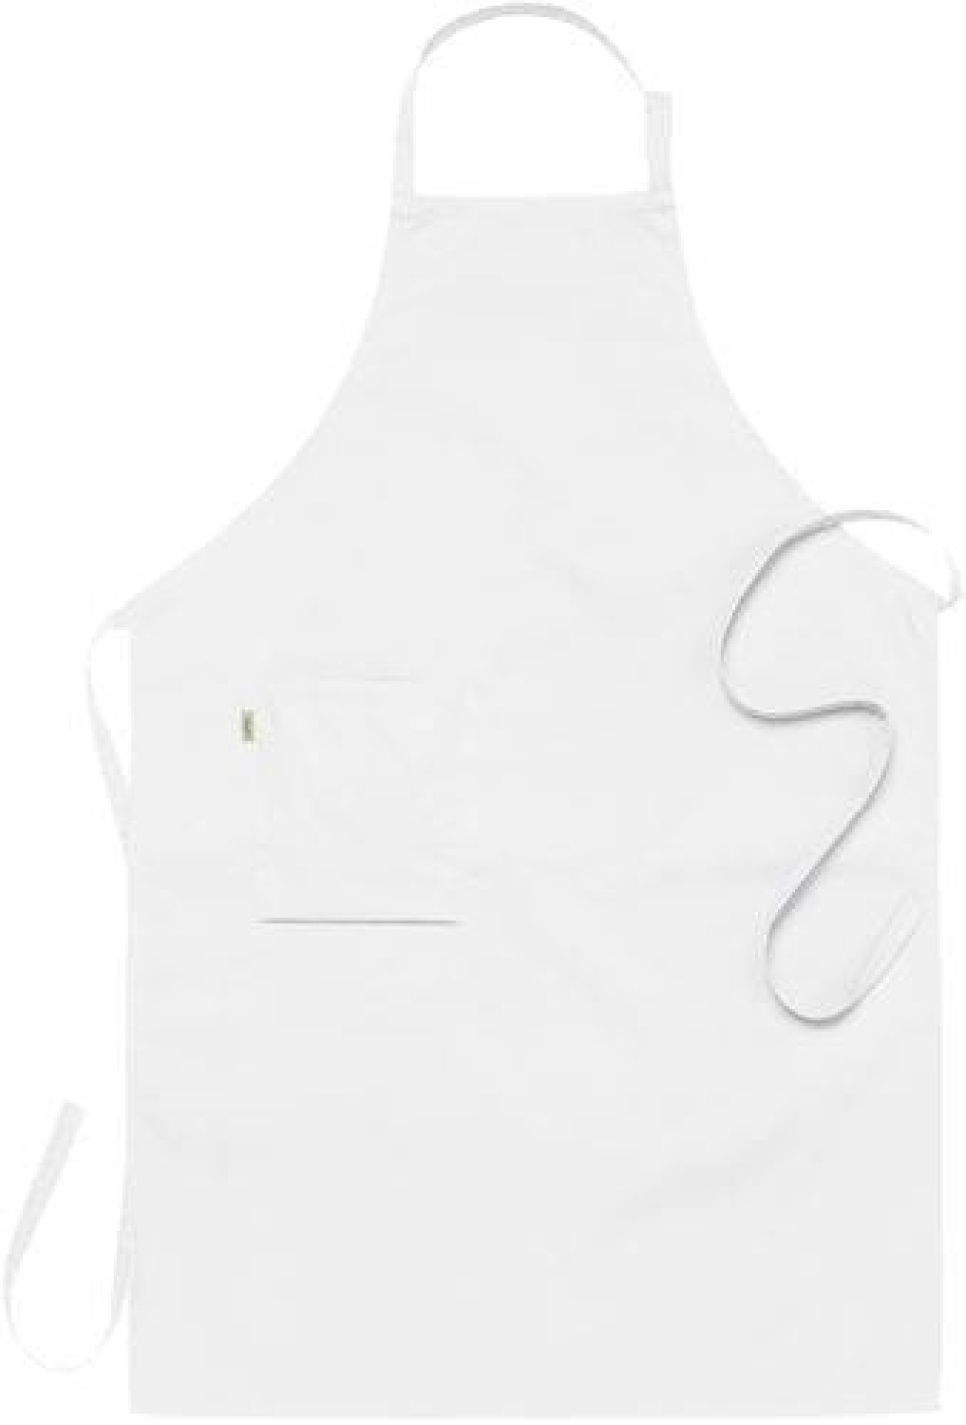 Tablier bavette, blanc 75 x 110 cm - Segers dans le groupe Cuisine / Habits de cuisine / Tabliers l\'adresse The Kitchen Lab (1092-10846)